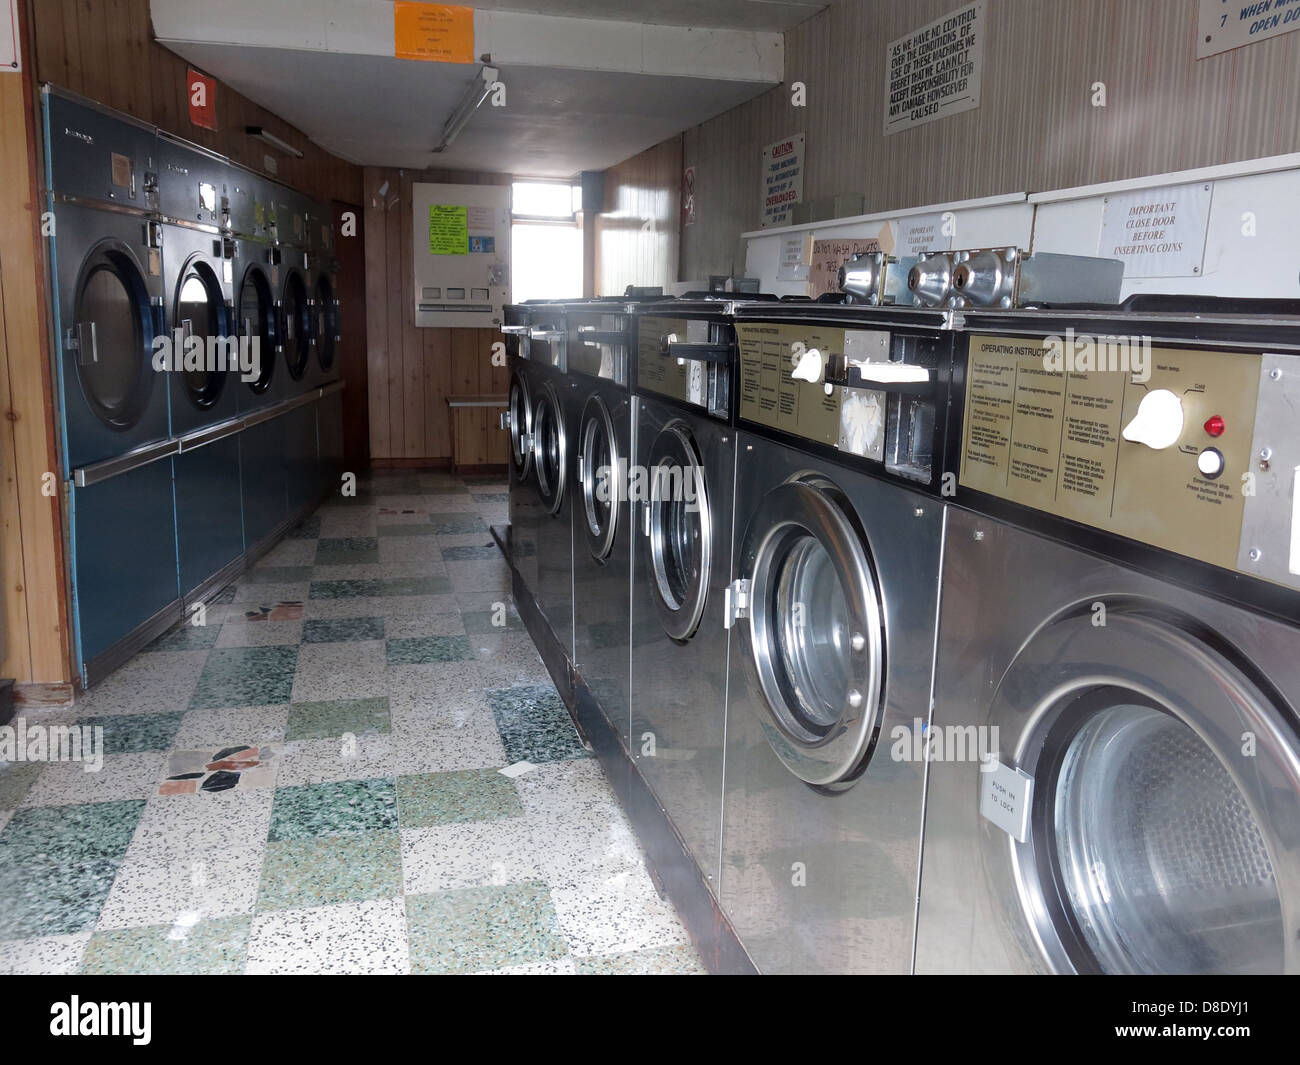 Traditionelle waschen Waschsalon Shop Maschinen, trockene saubere Mitte Knutsford rd Grappenhall, Warrington UK Stockfoto